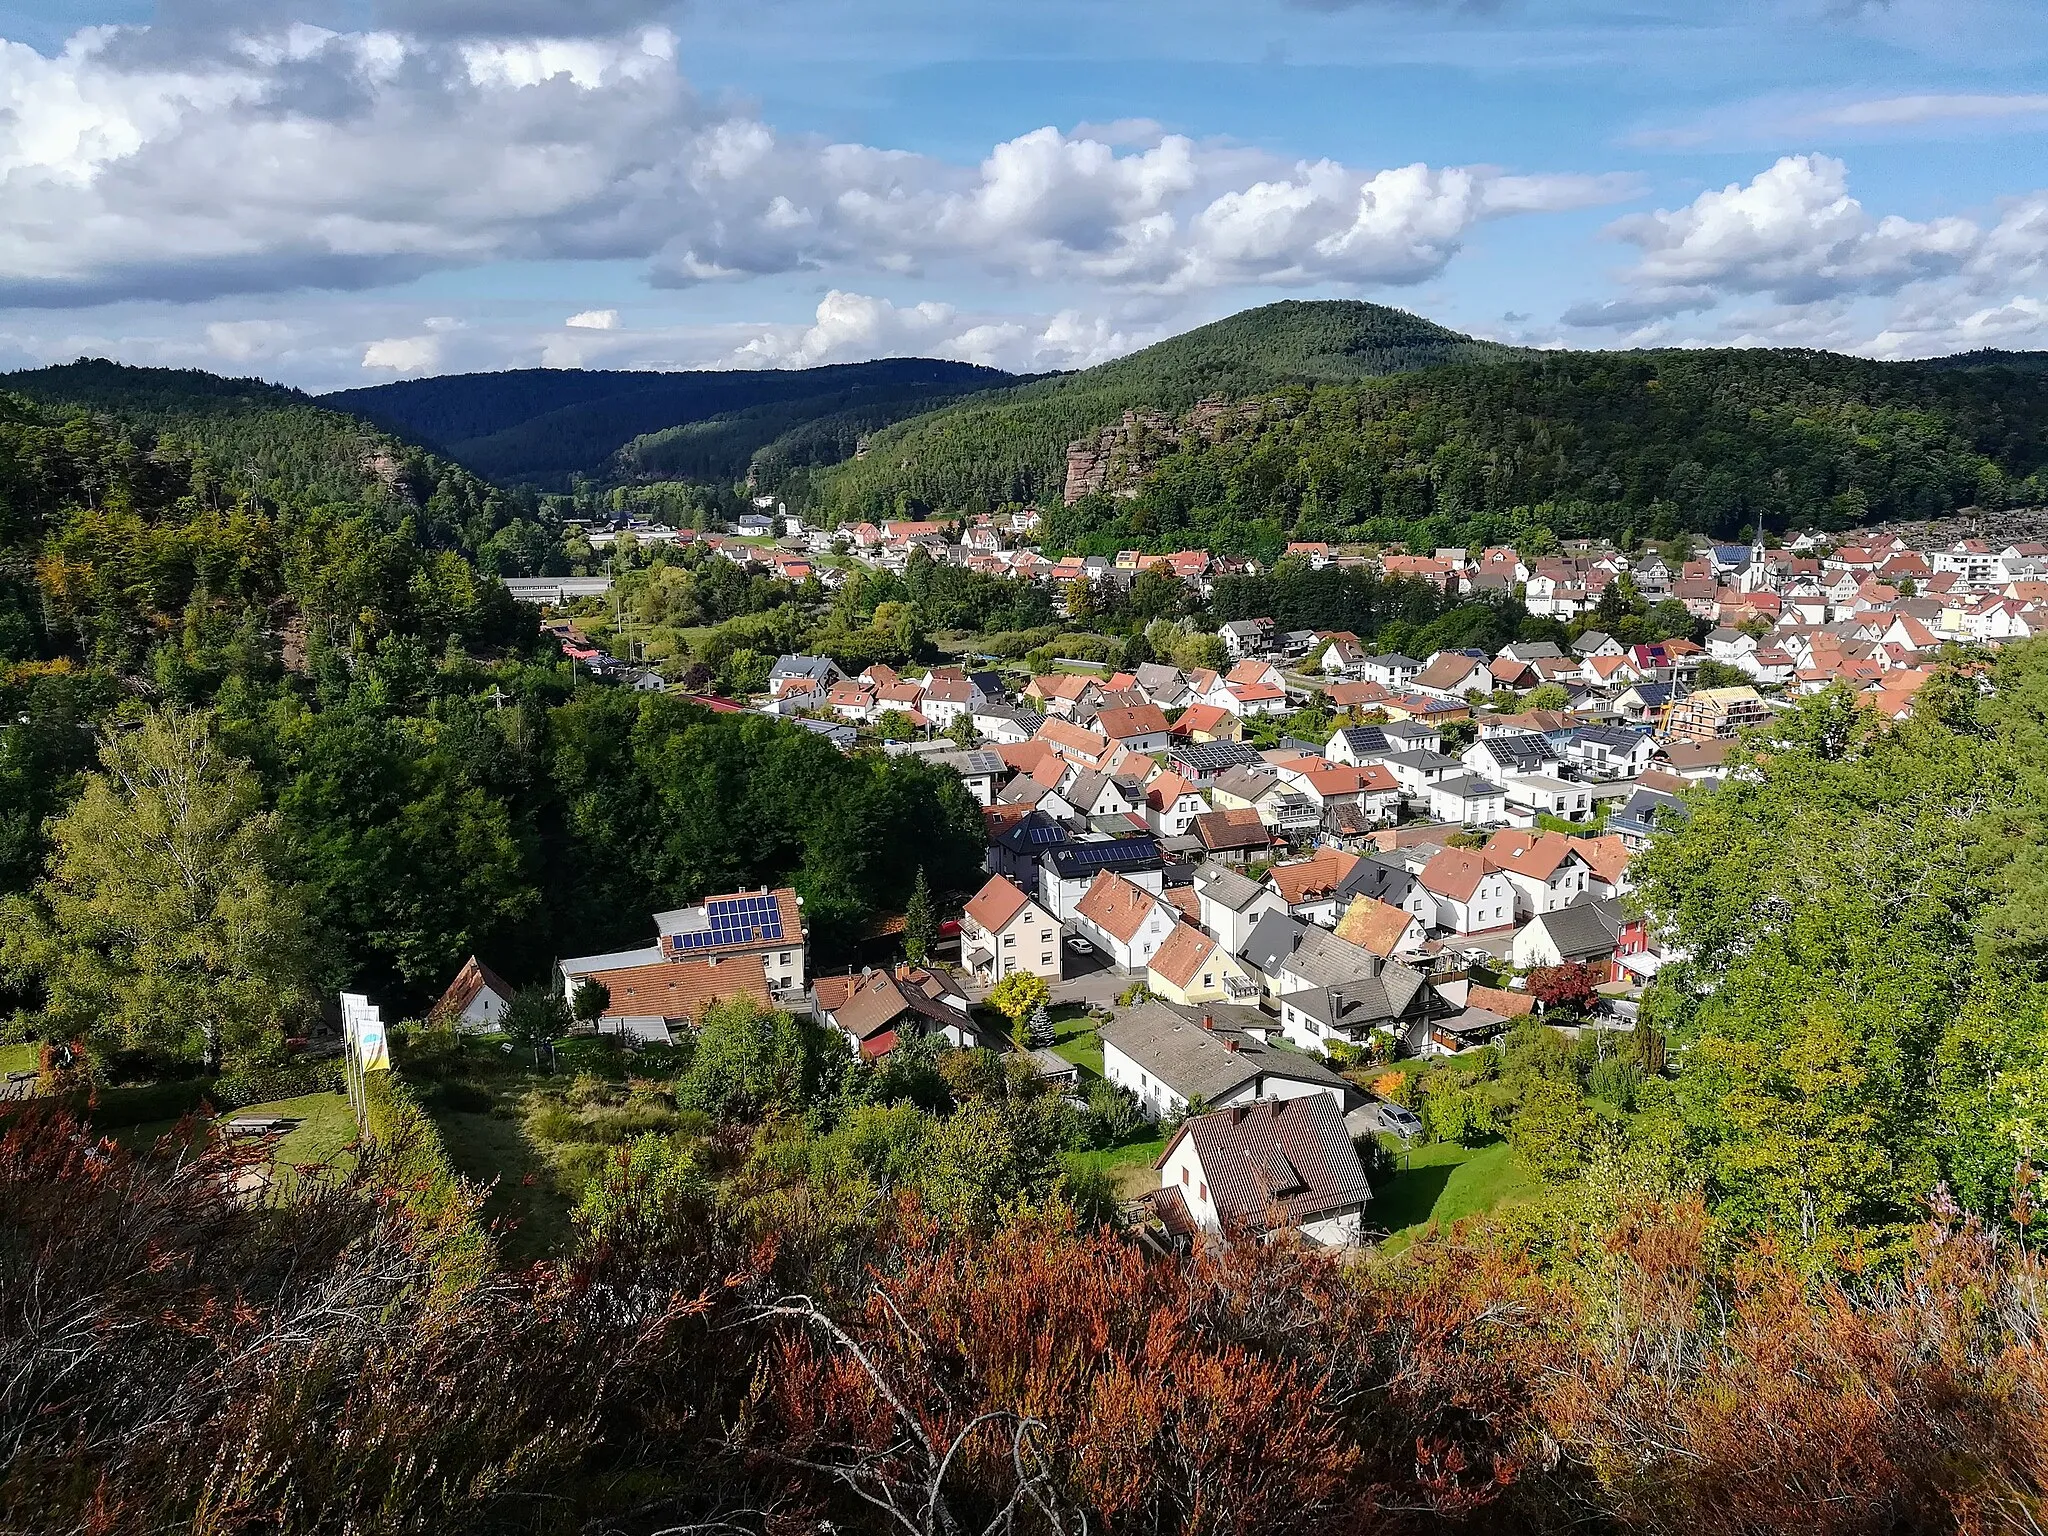 Photo showing: Blick über die Stadt Dahn von der Felsformation "Wachtfelsen" aus. Auf der gegenüberliegenden Seite kann man die Felsformation Jungfernsprung sehen.